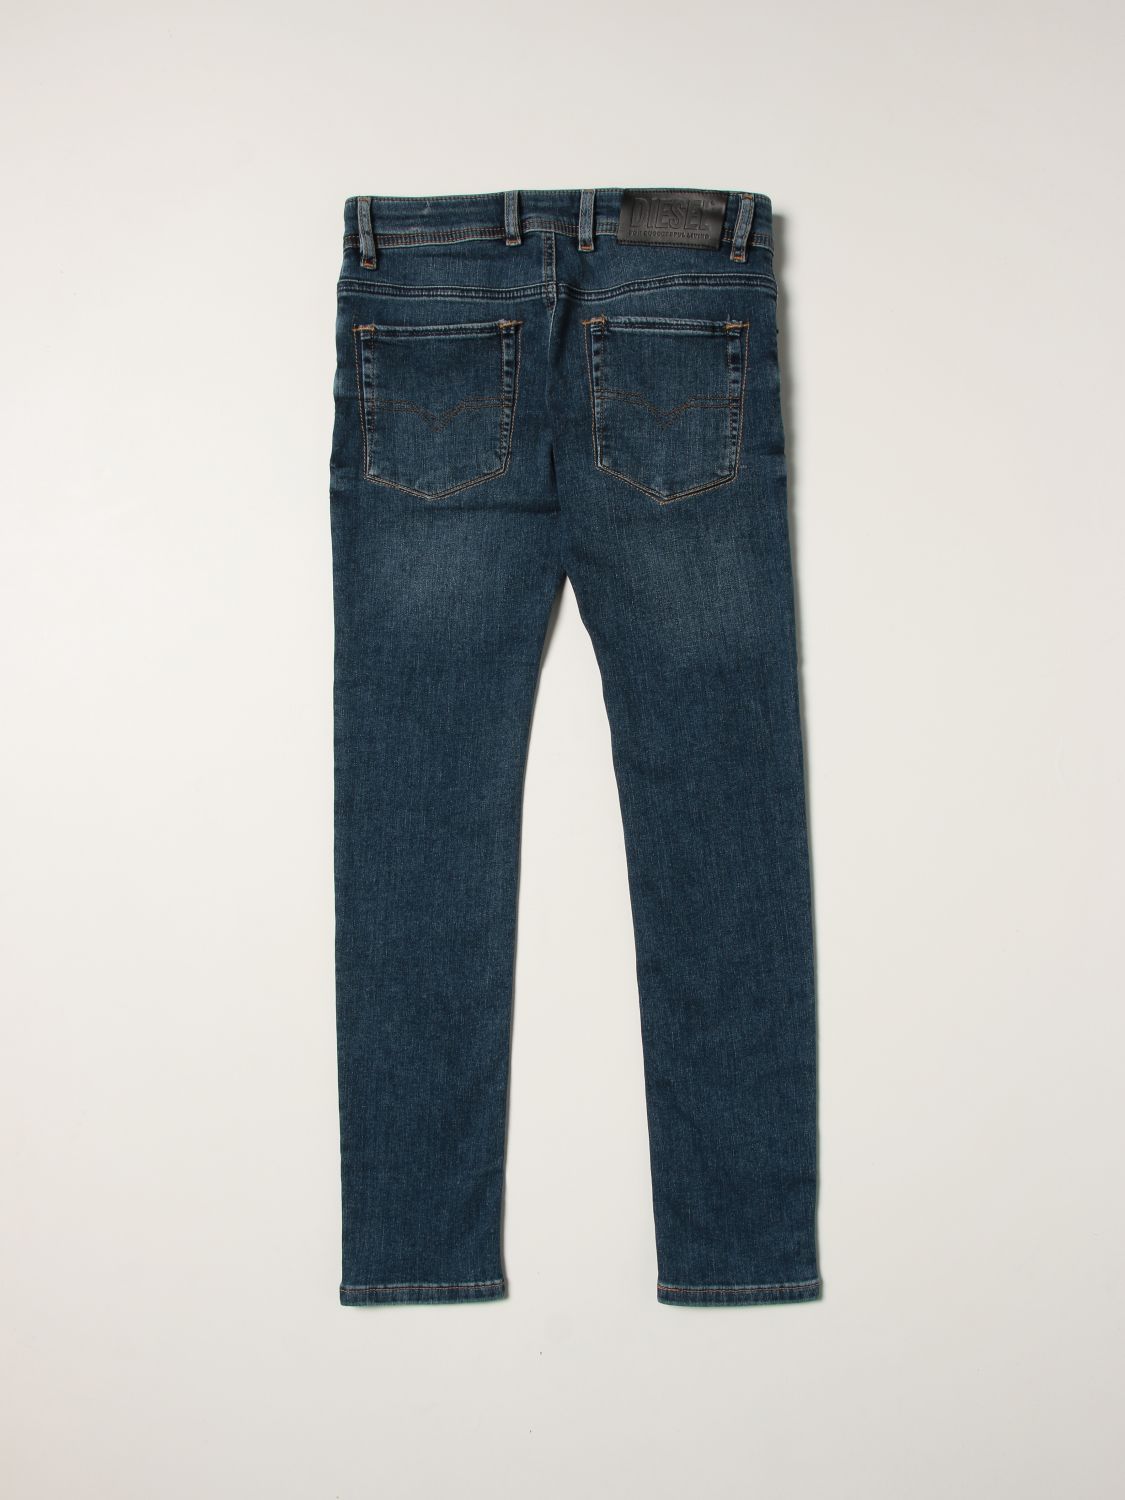 Jeans Diesel: Sleenker Diesel 5-pocket jeans denim 2